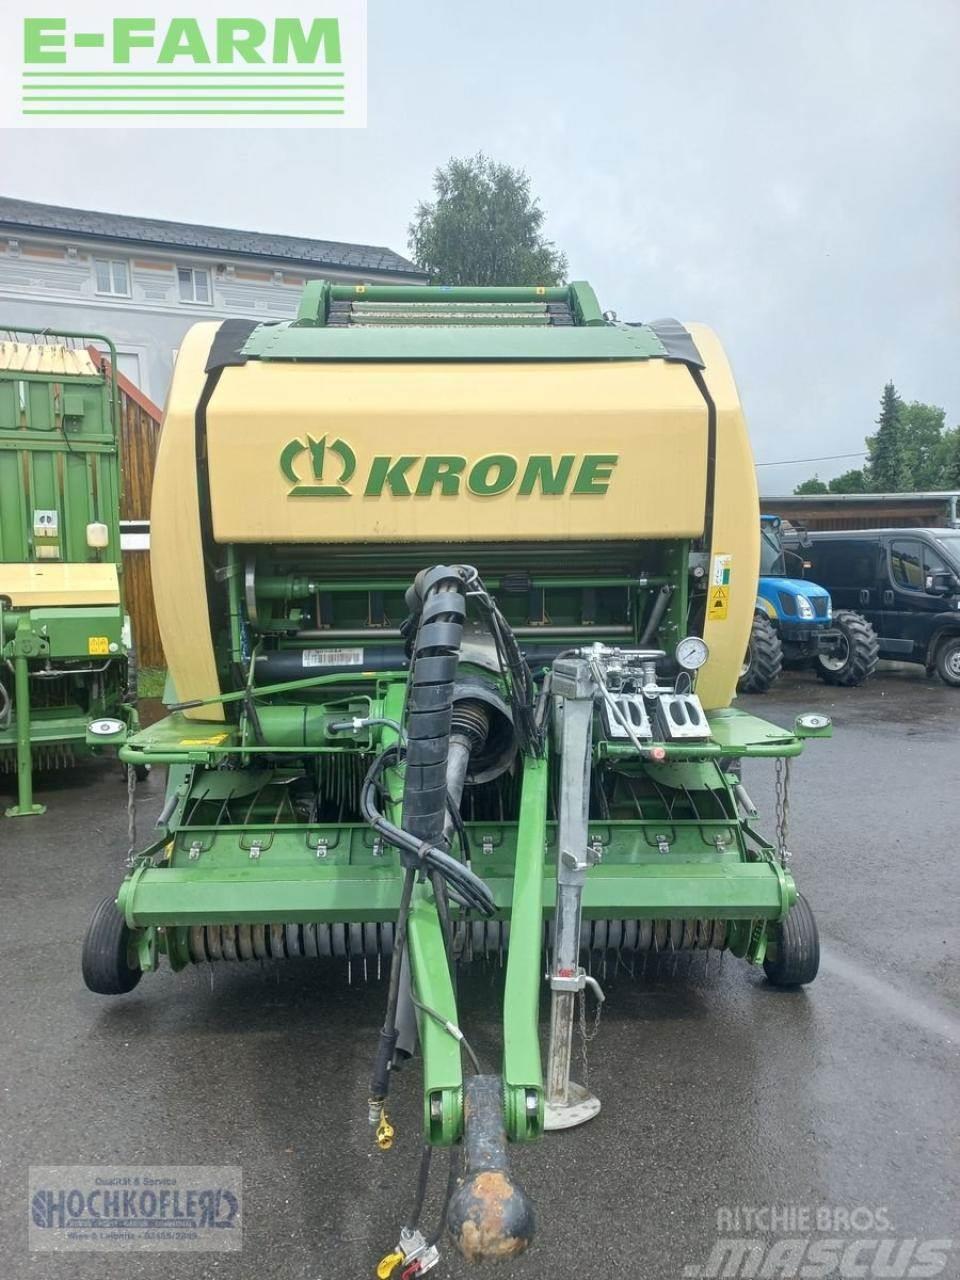 Krone comprima cf155 xc Küp balya makinalari